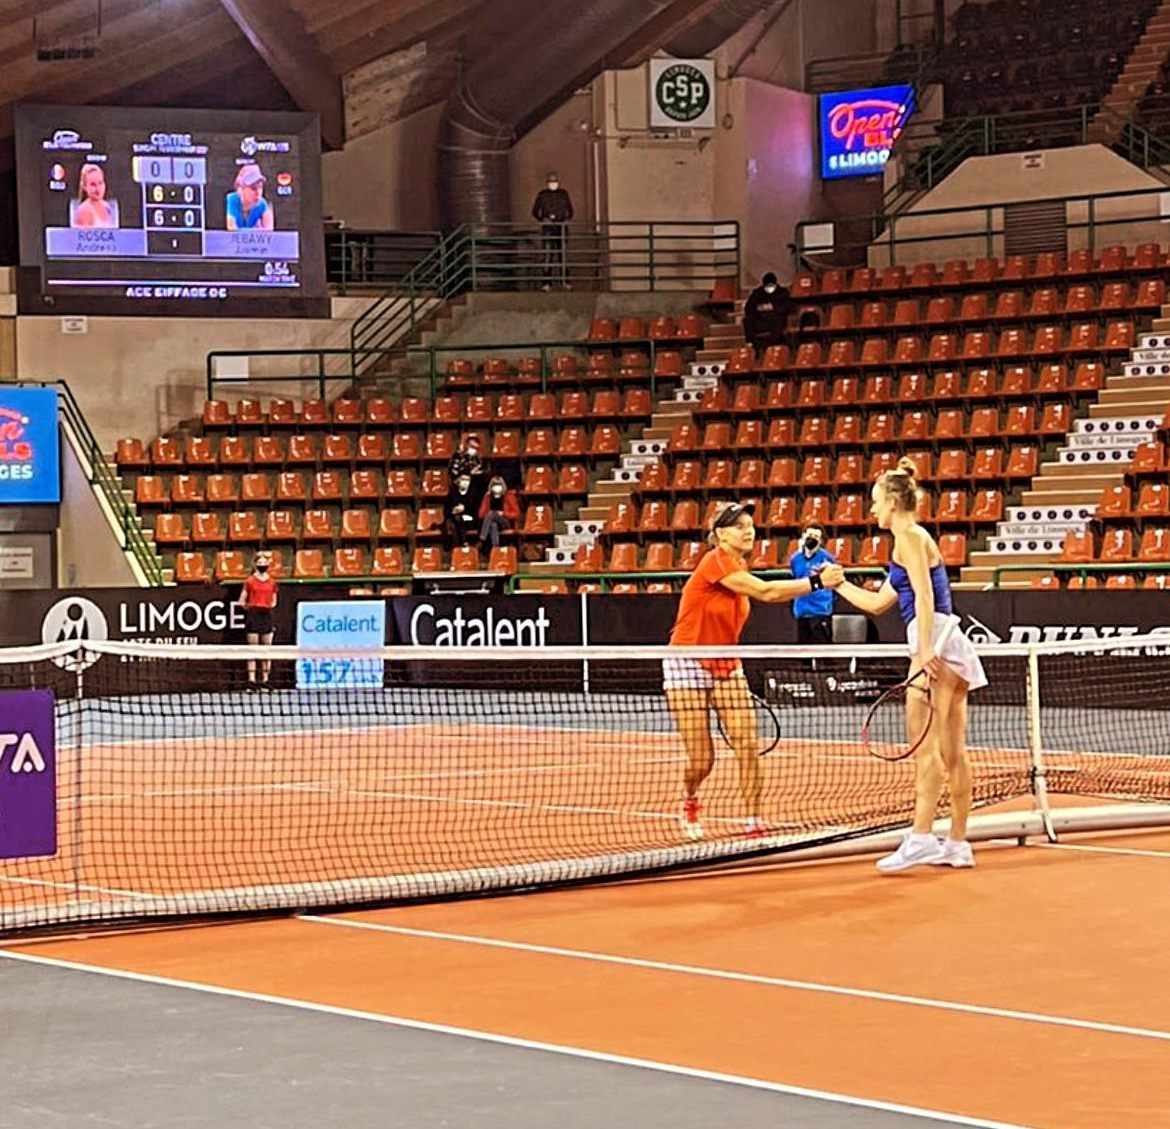  Tenismena de la Sportsin Arad, Andreea Roşca, s-a calificat pe tabloul principal de la Limoges